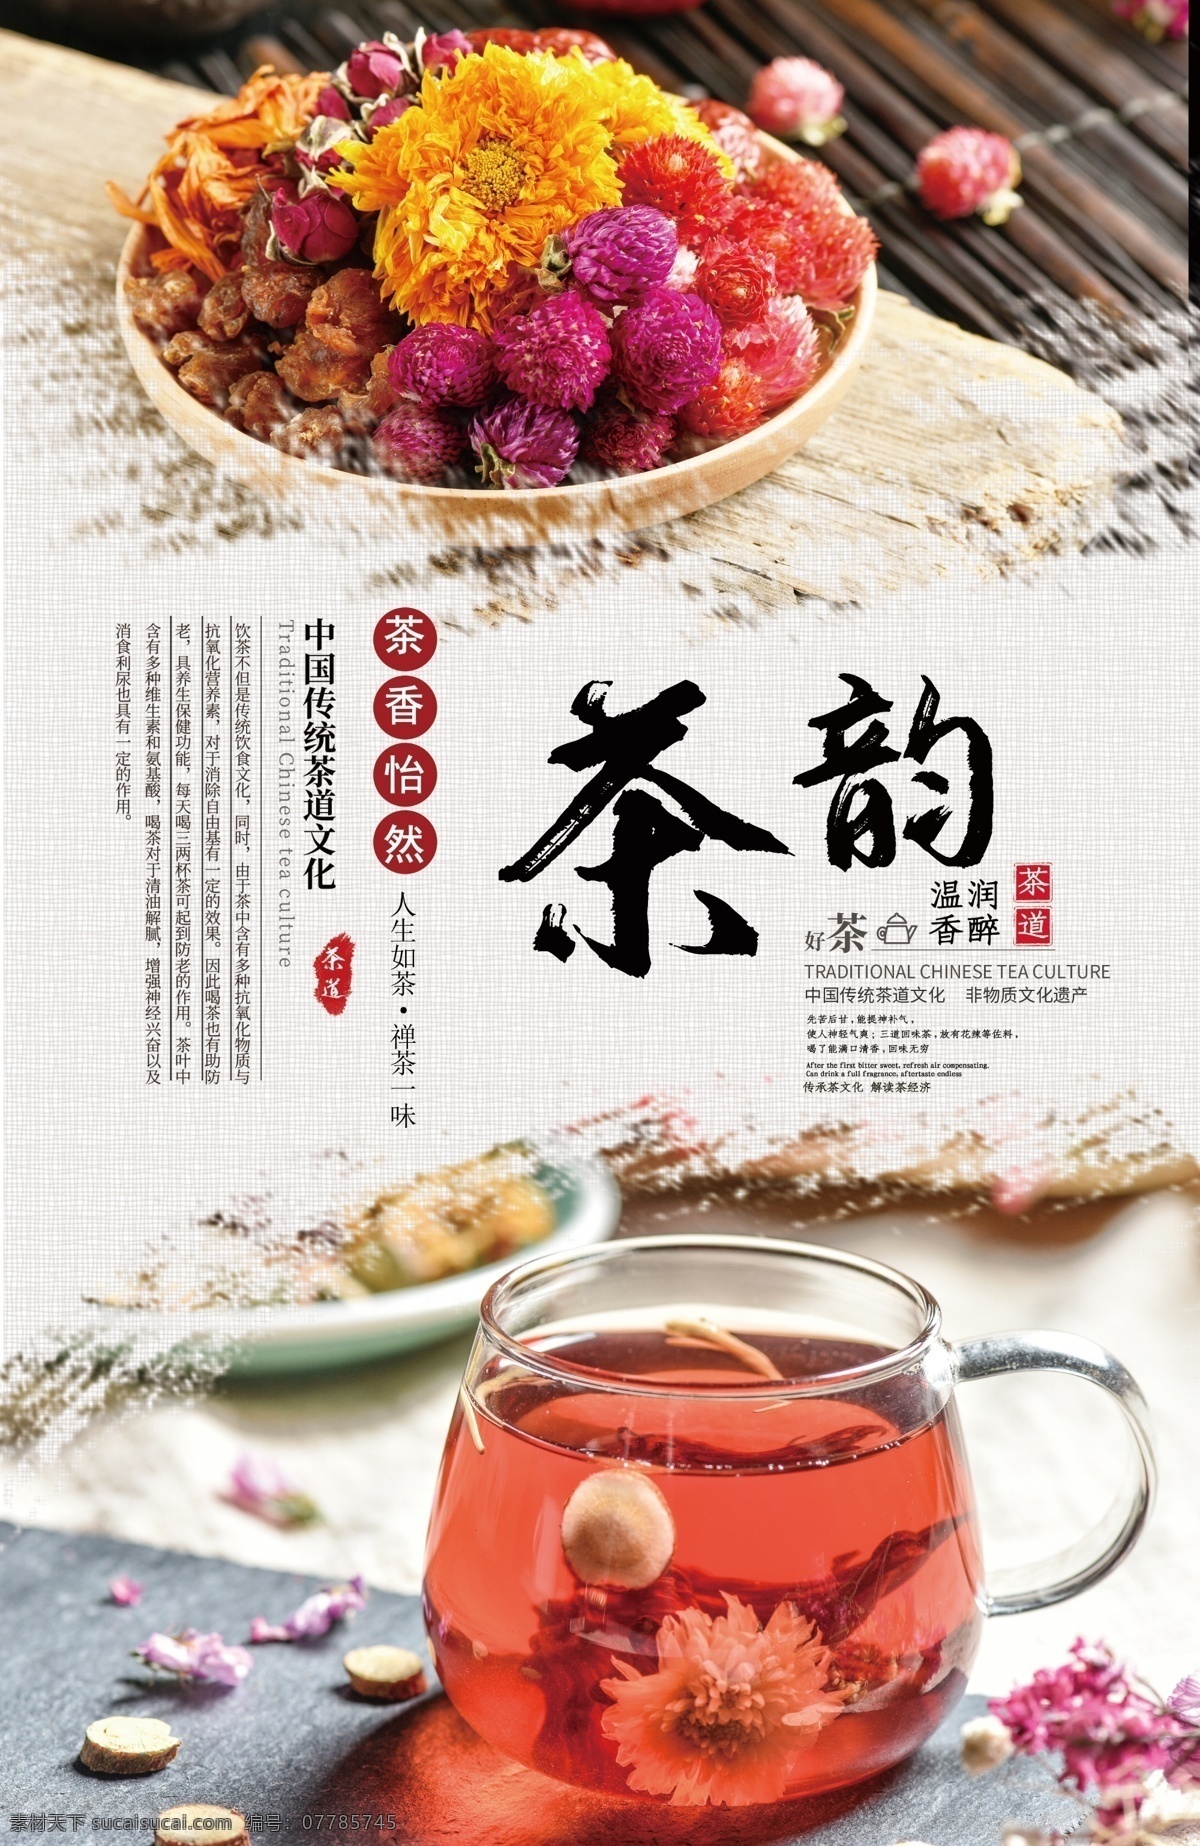 茶 韵 茶文化 海报 茶韵 茶文化海报 中国茶 茶艺 茶道 沏茶 茶叶 红茶 绿茶 花茶